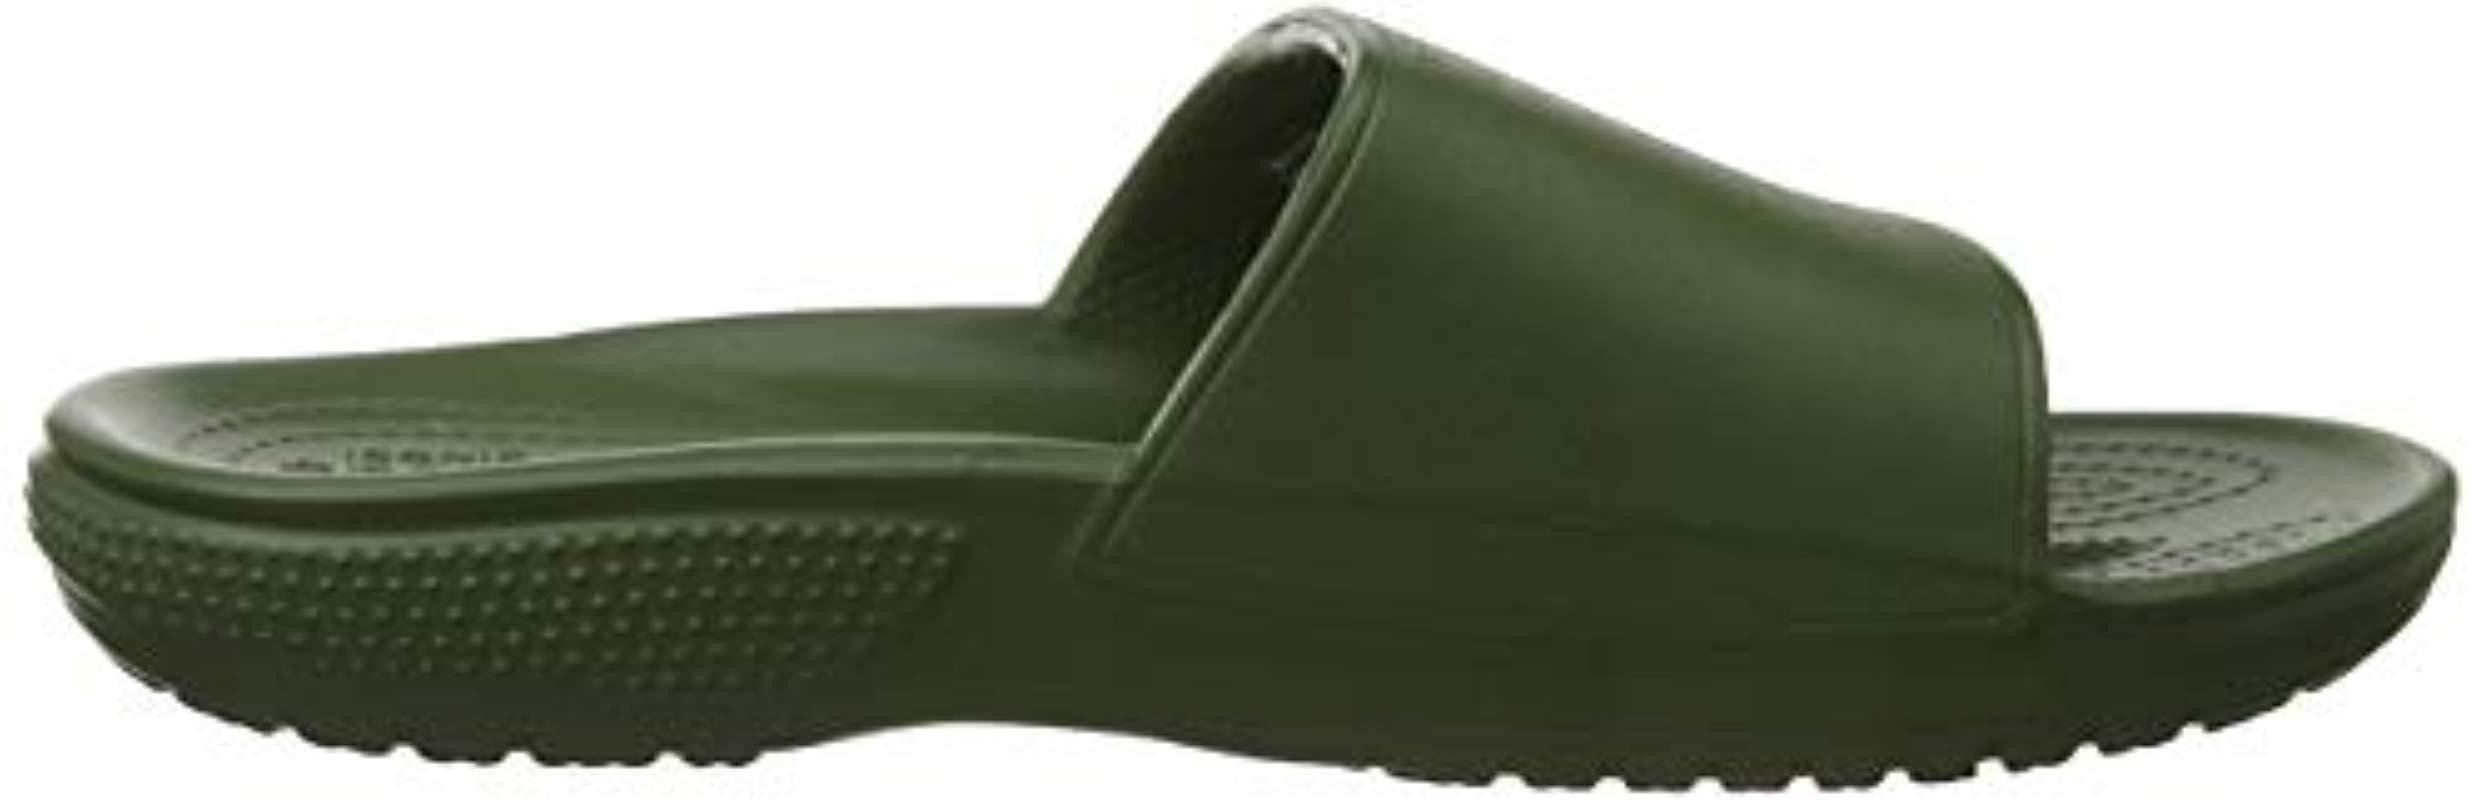 Crocs Unisex Adults Classic Ii Slide Open Toe Sandals 